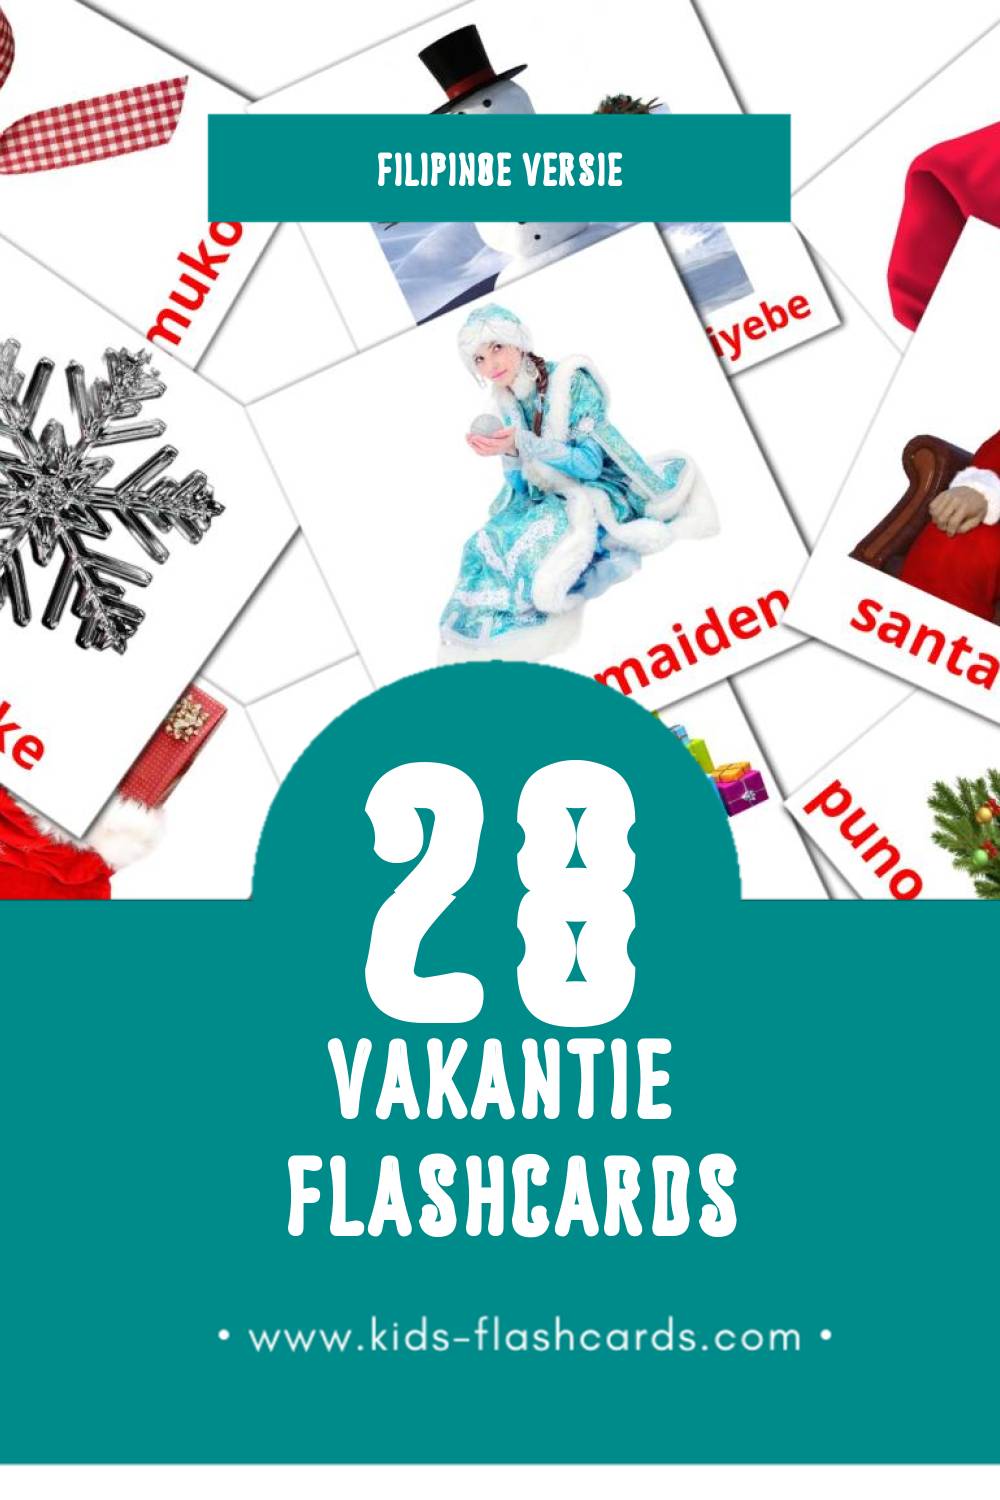 Visuele Piyesta Opisyal Flashcards voor Kleuters (28 kaarten in het Filipino)